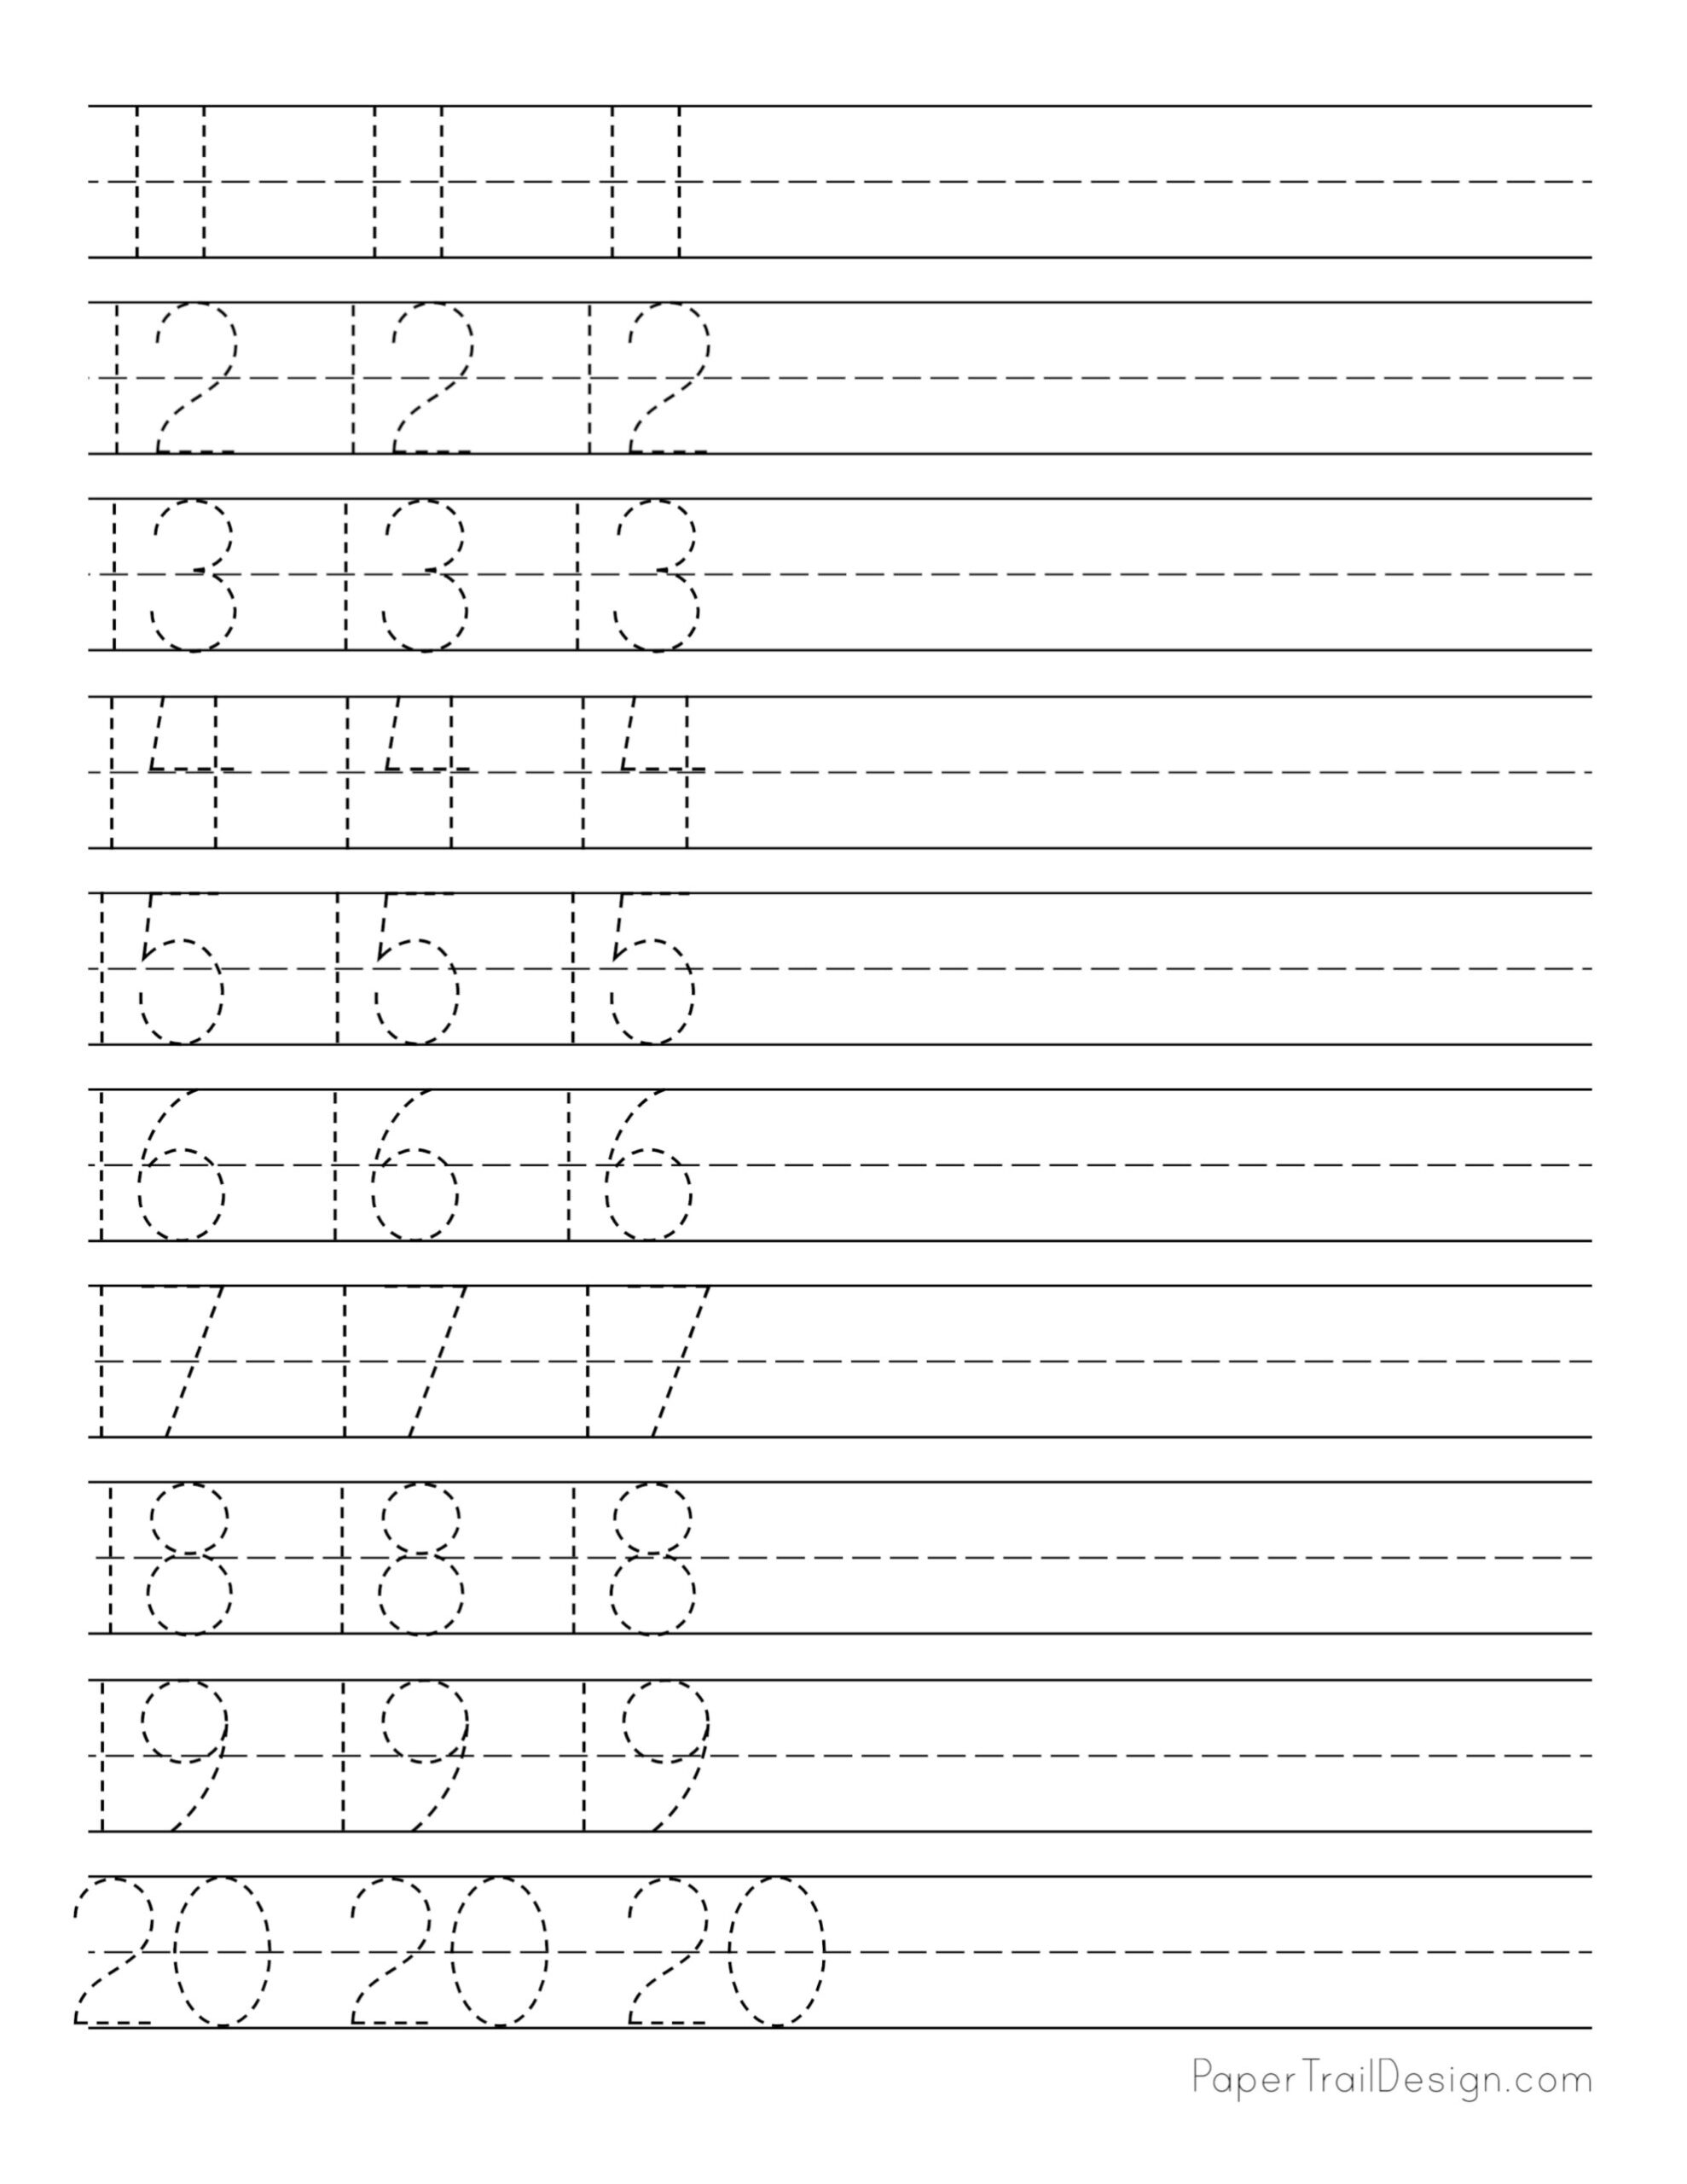 Practice Writing Numbers Worksheet Printable